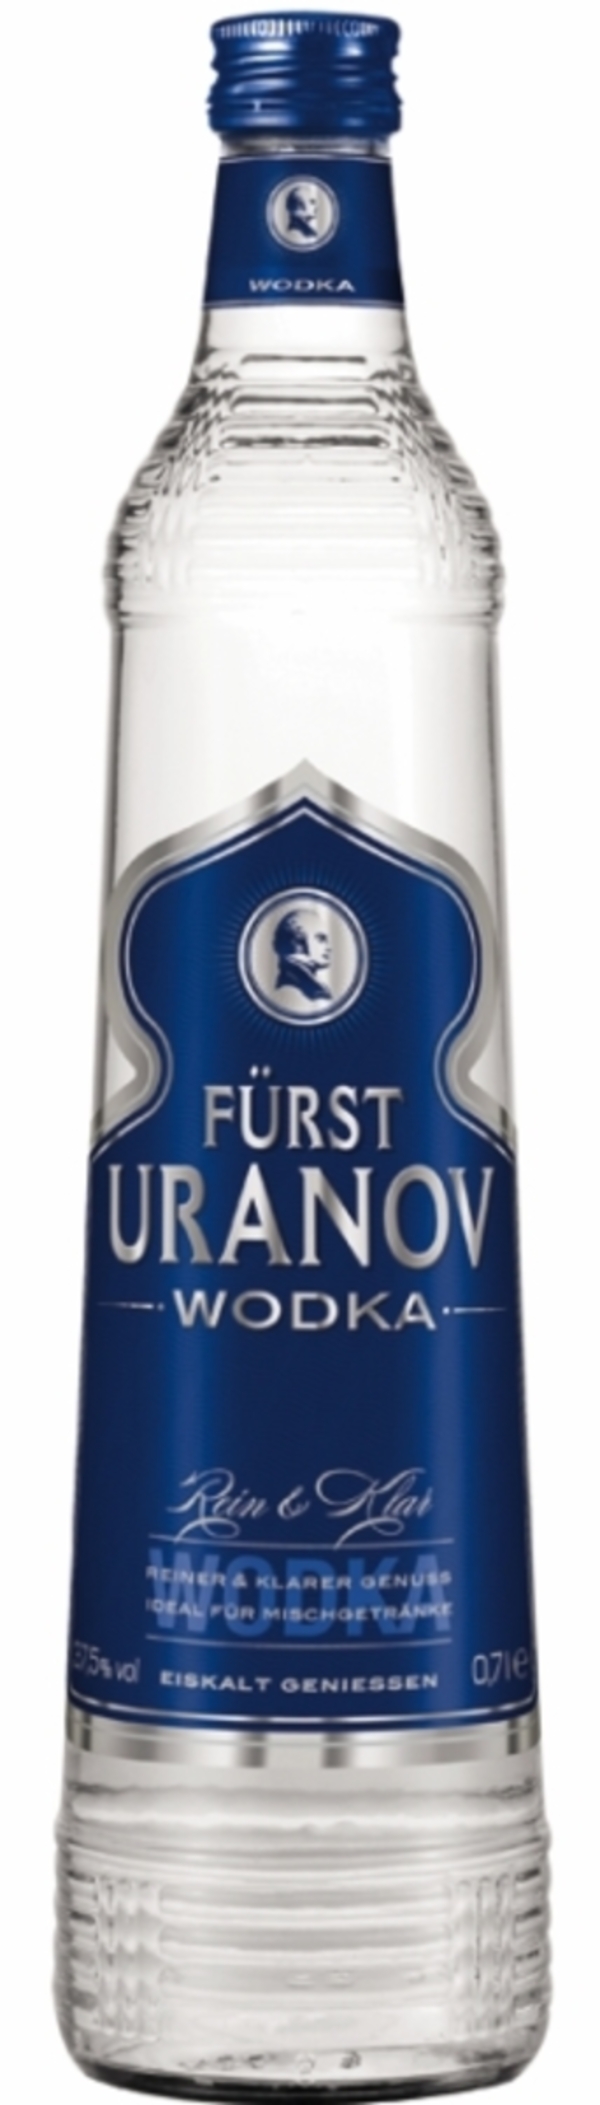 Bild 1 von Fürst Uranov Wodka 0,7 ltr